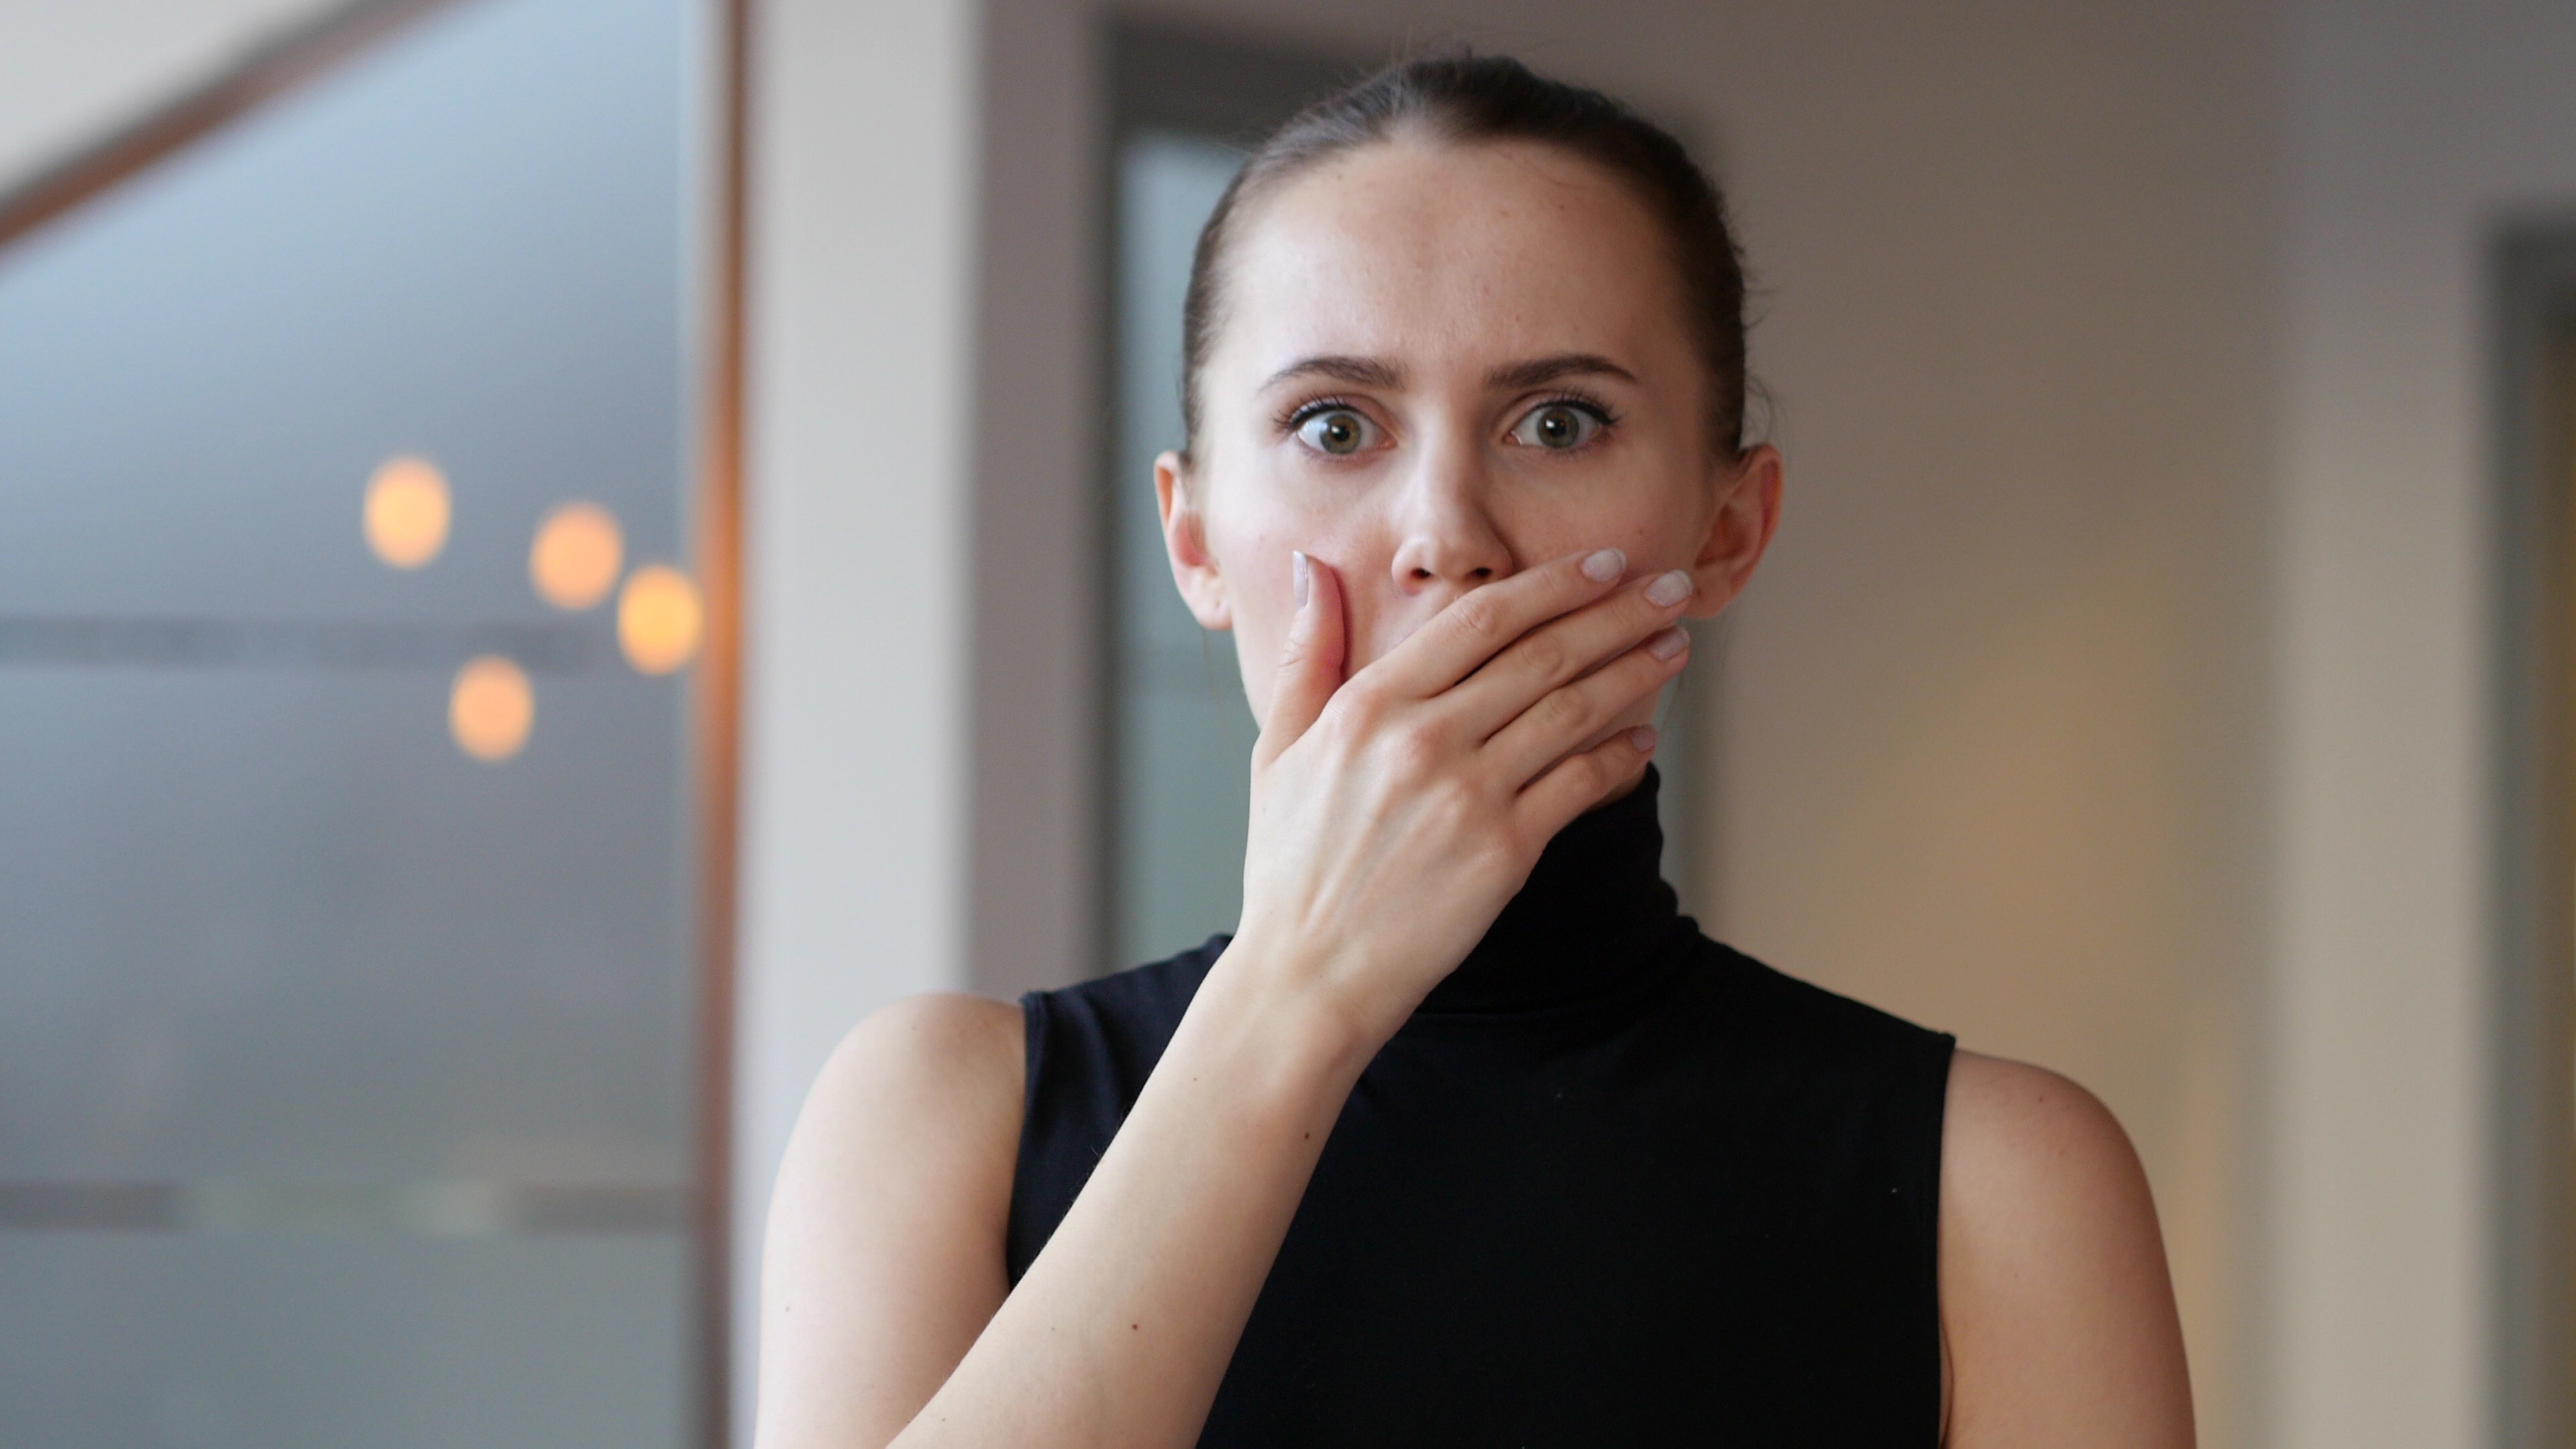 Eine junge Frau schockiert | Quelle: Shutterstock